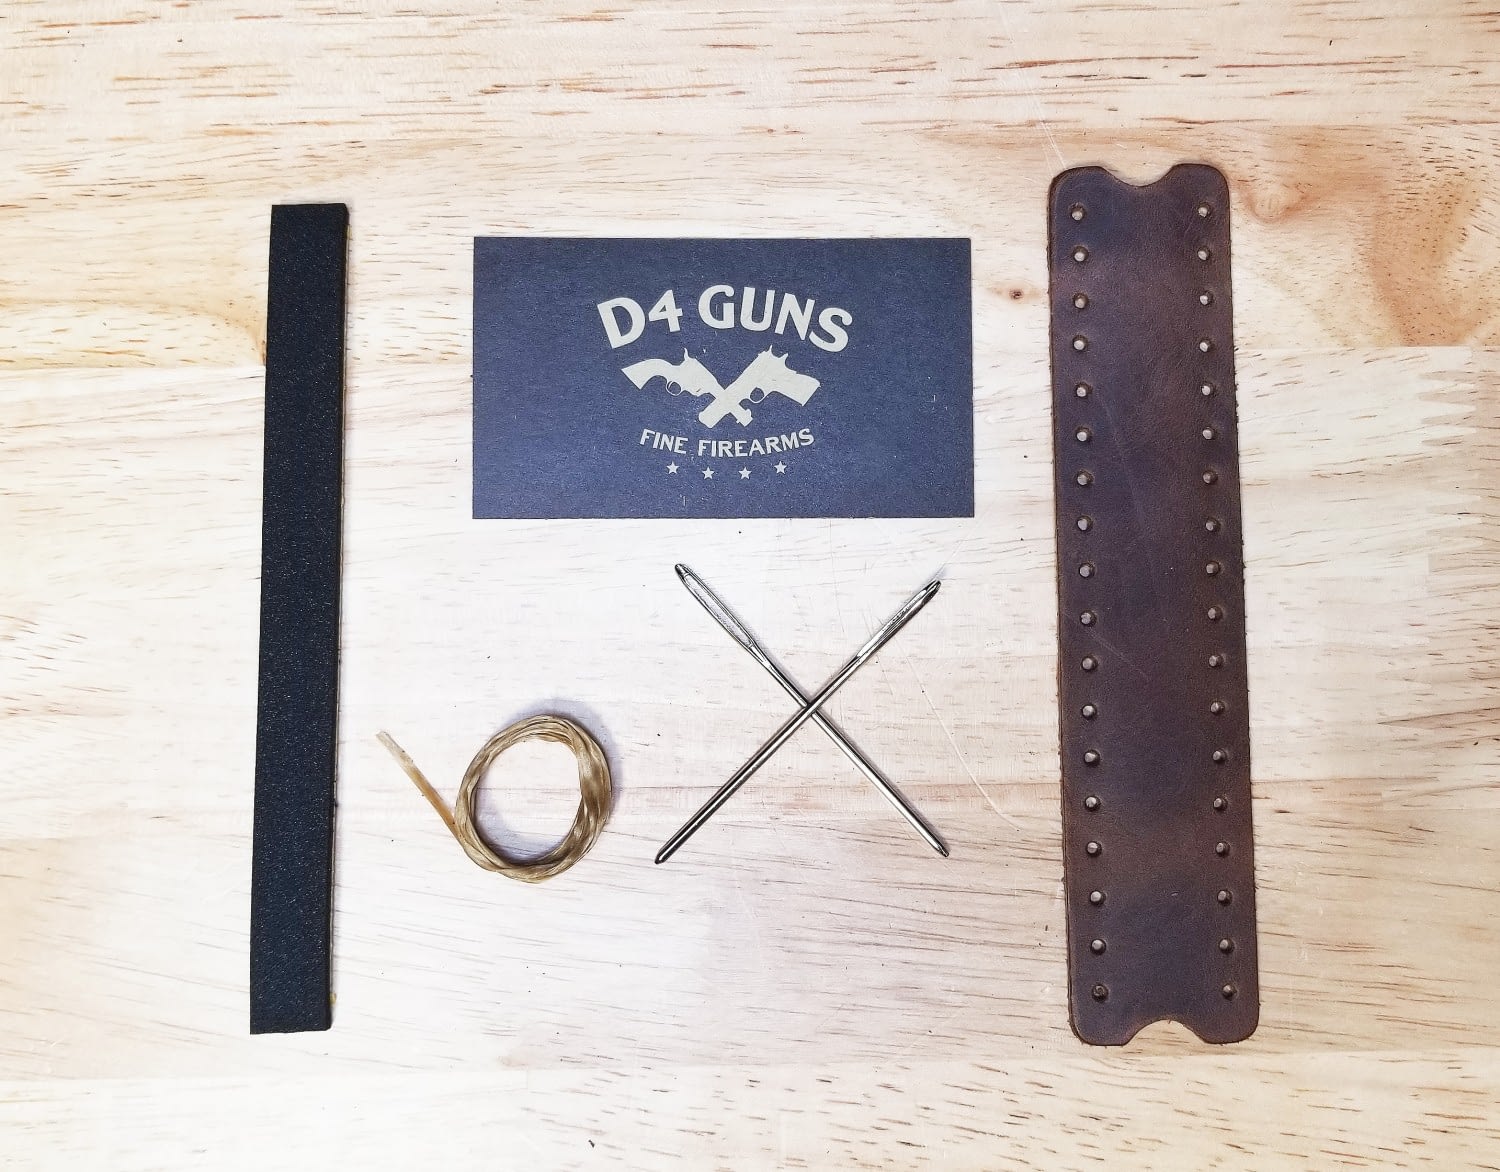 AK Leather Cheek Rest Kits by D4 Guns (3)